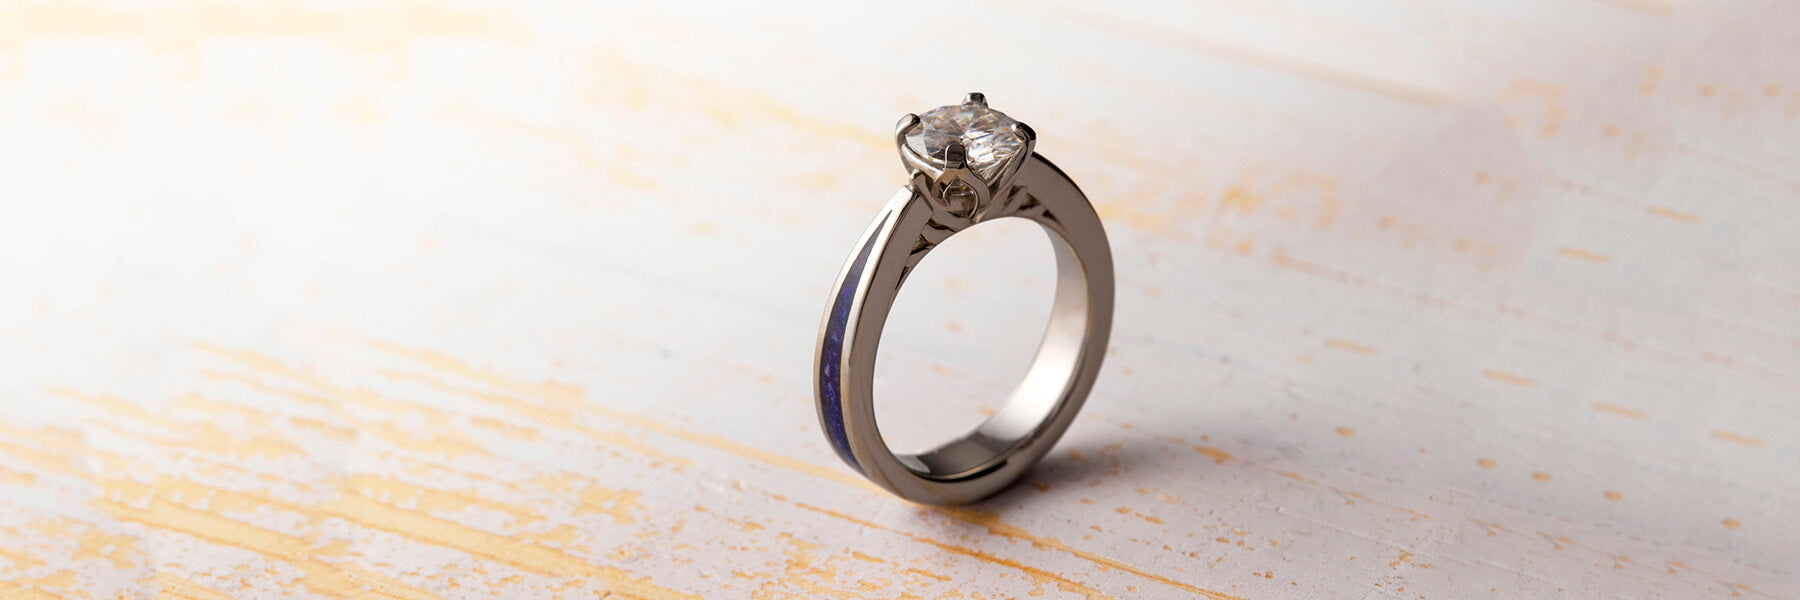 Lapis lazuli engagement ring